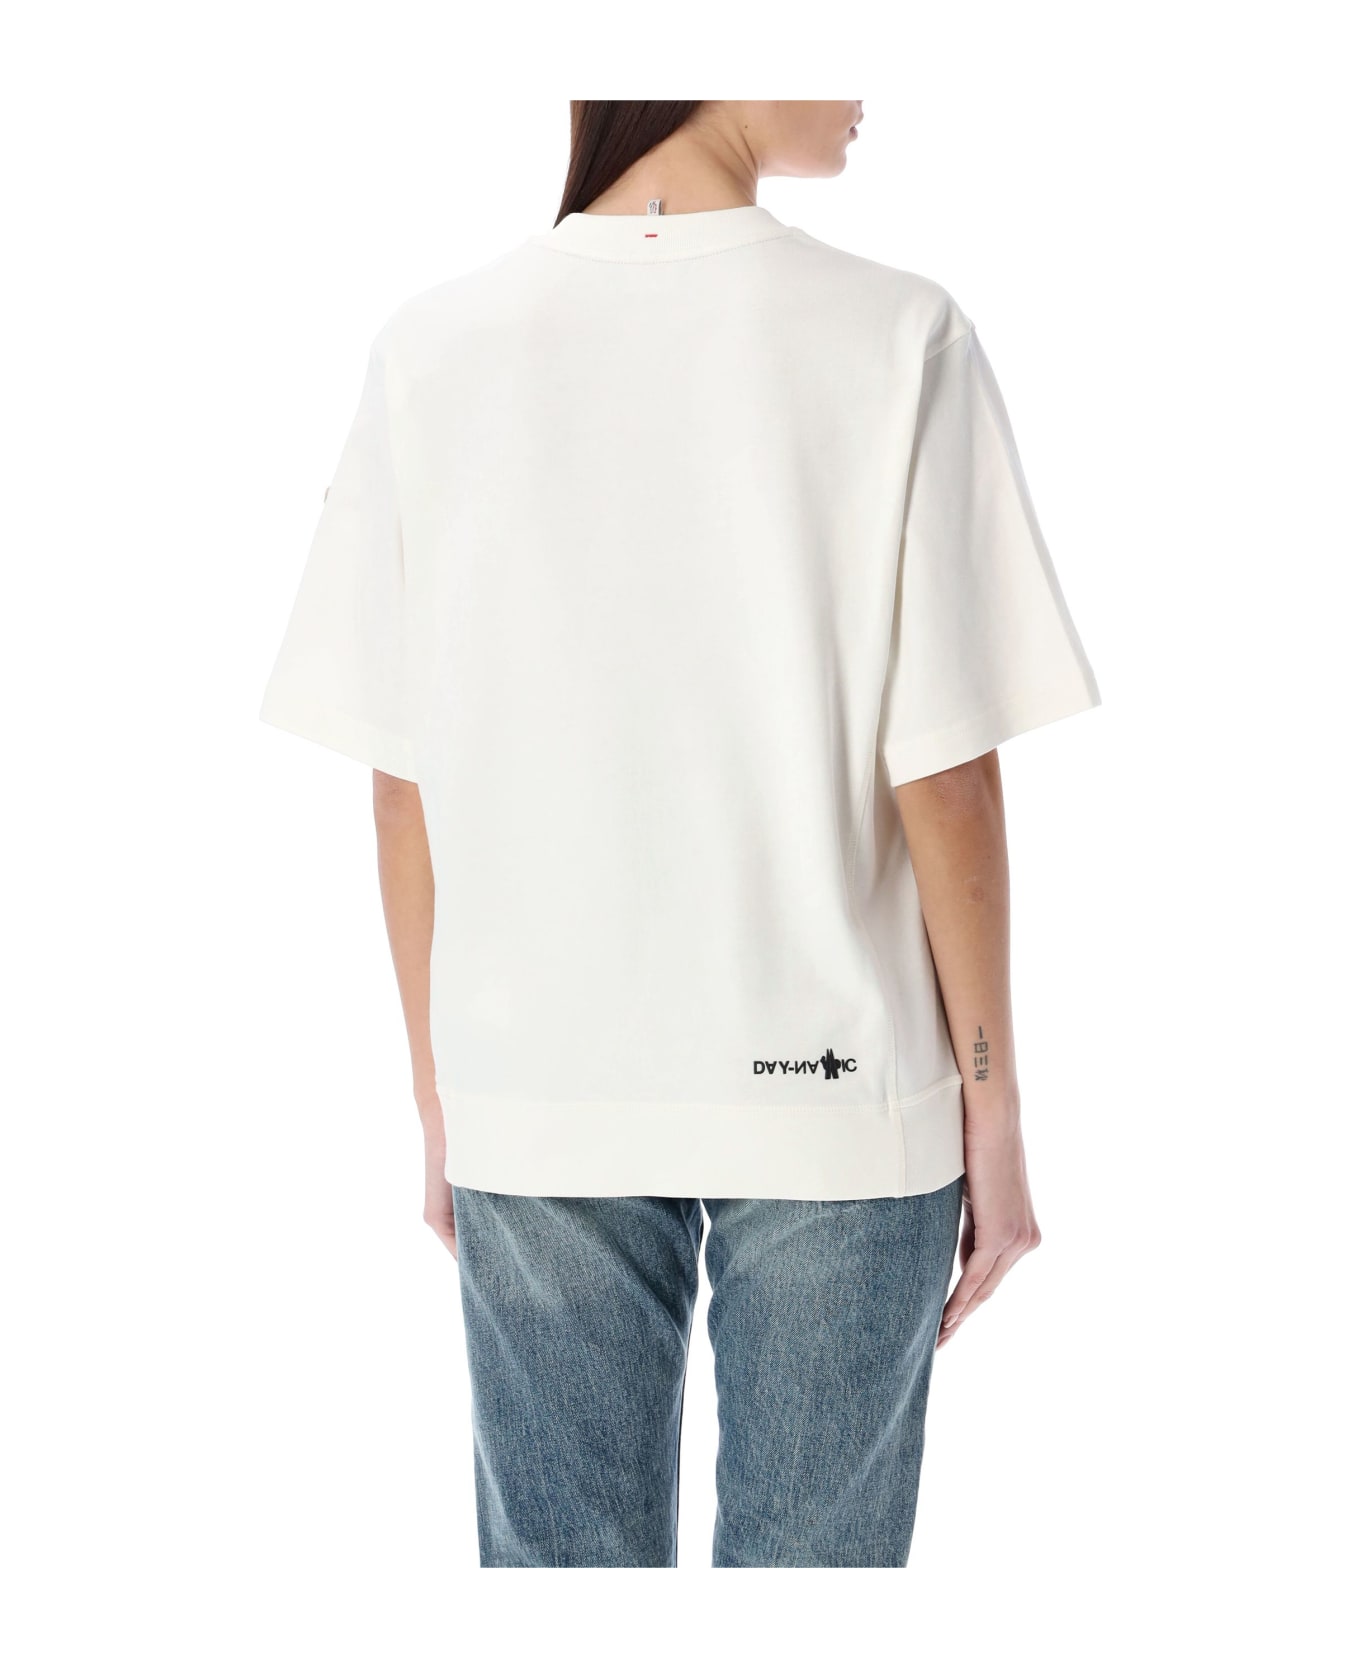 Moncler Grenoble T-shirt Tmm - WHITE Tシャツ